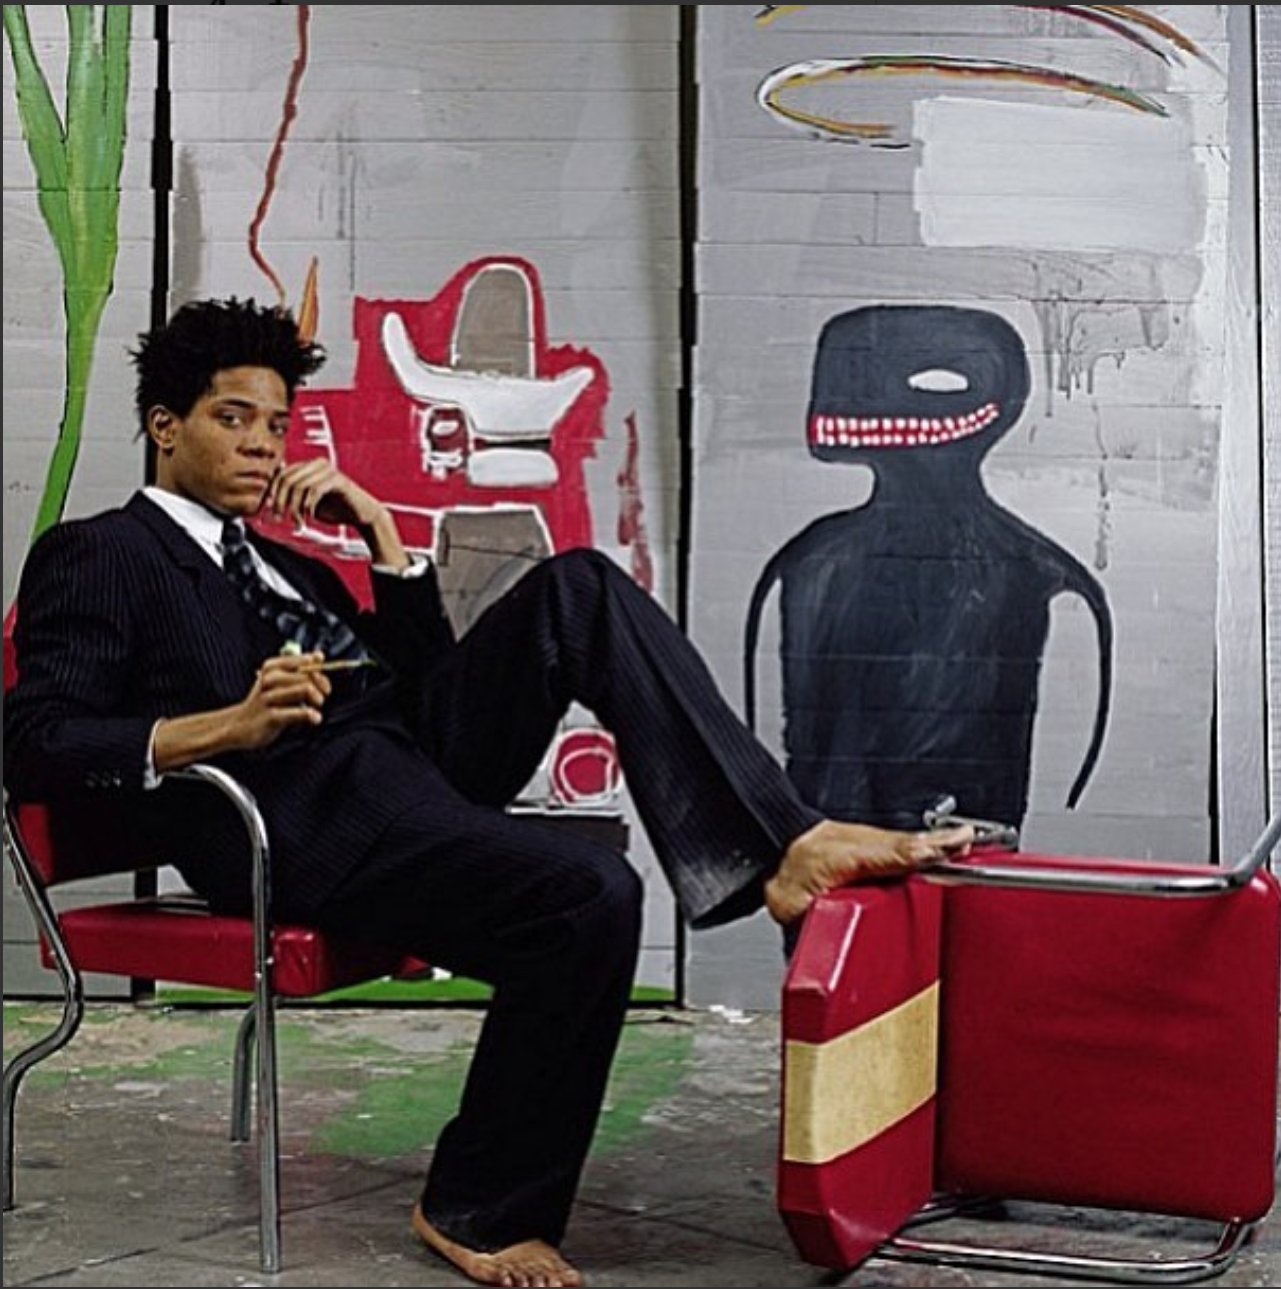 Basquiat reclinado en una silla frente al arte sobre concreto con una pierna sobre una silla caída.